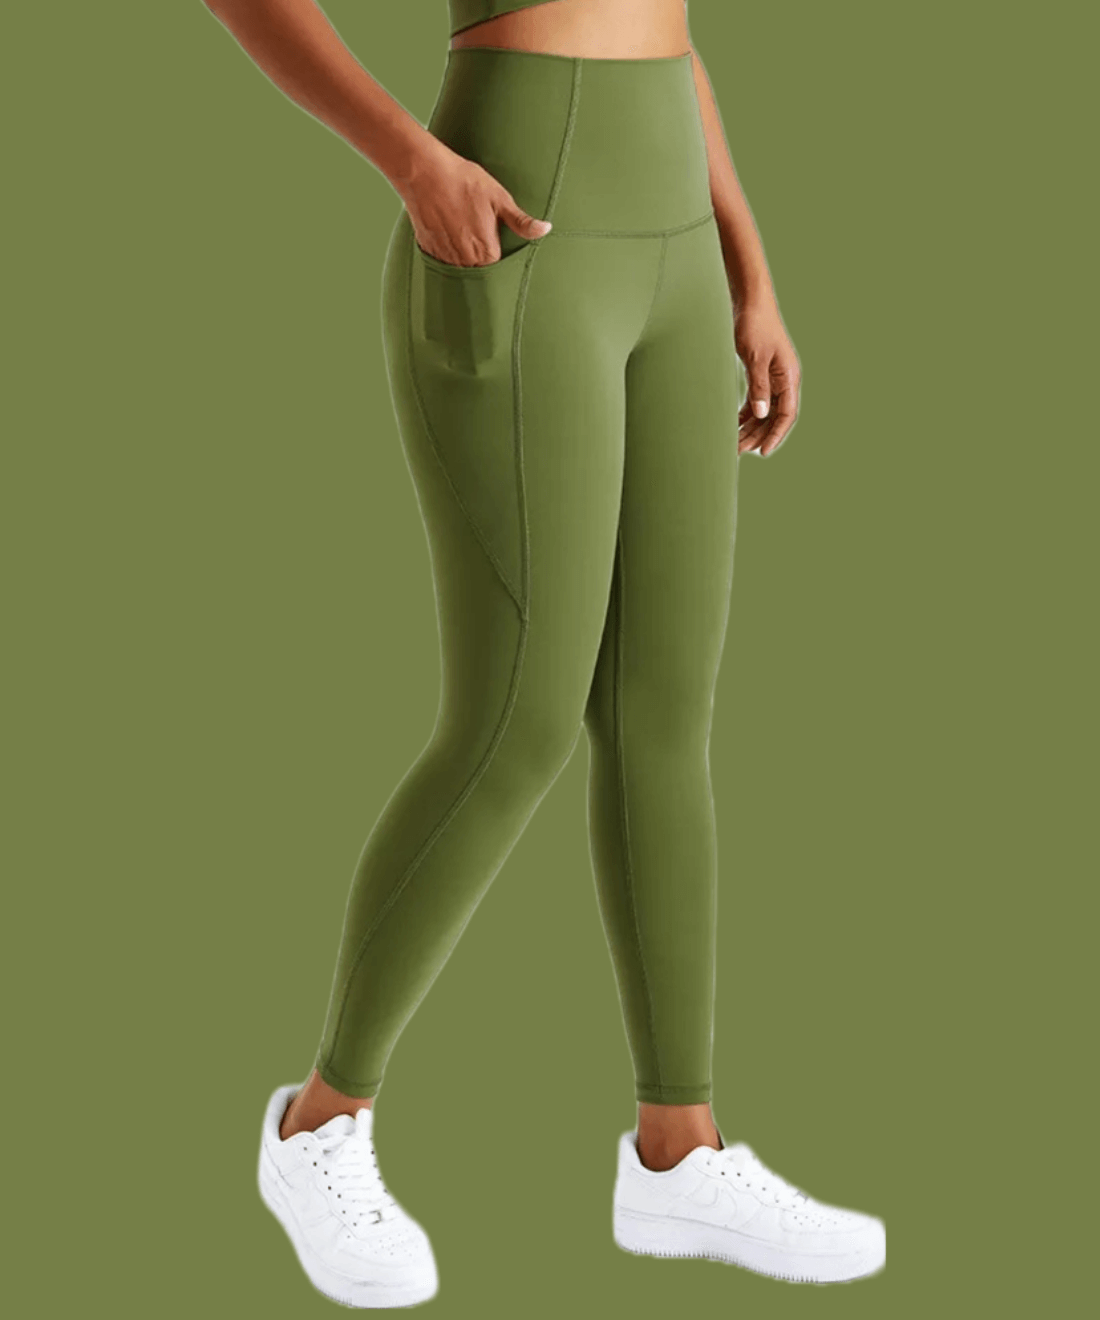 Buy Green Woollen Leggings Online - W for Woman